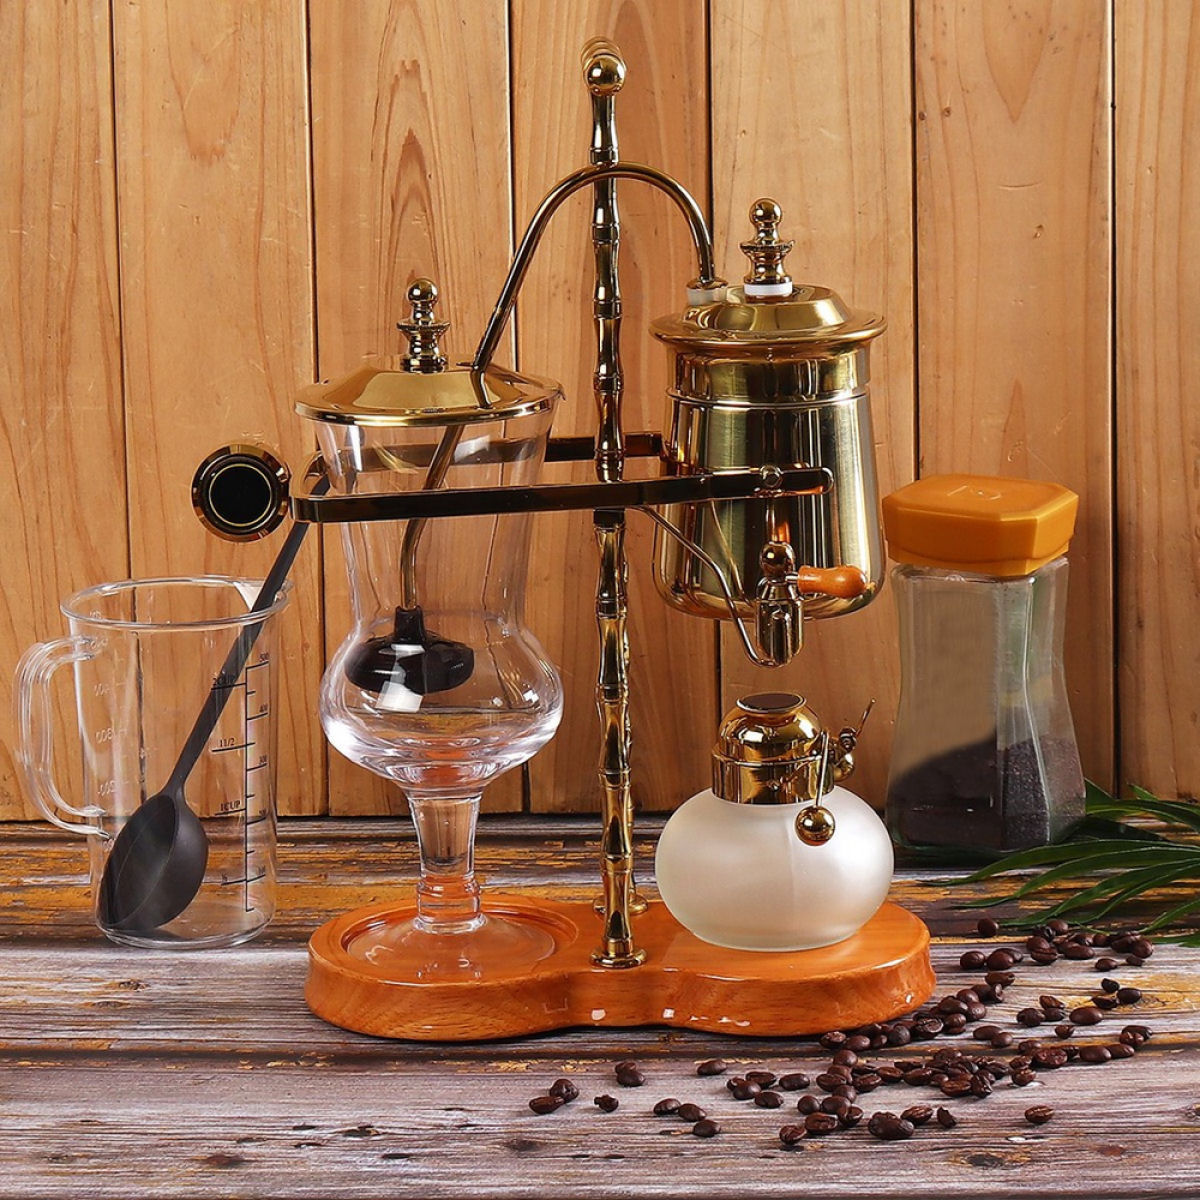 Cafeteira do século 19 em ação é a forma mais requintada de preparar um café